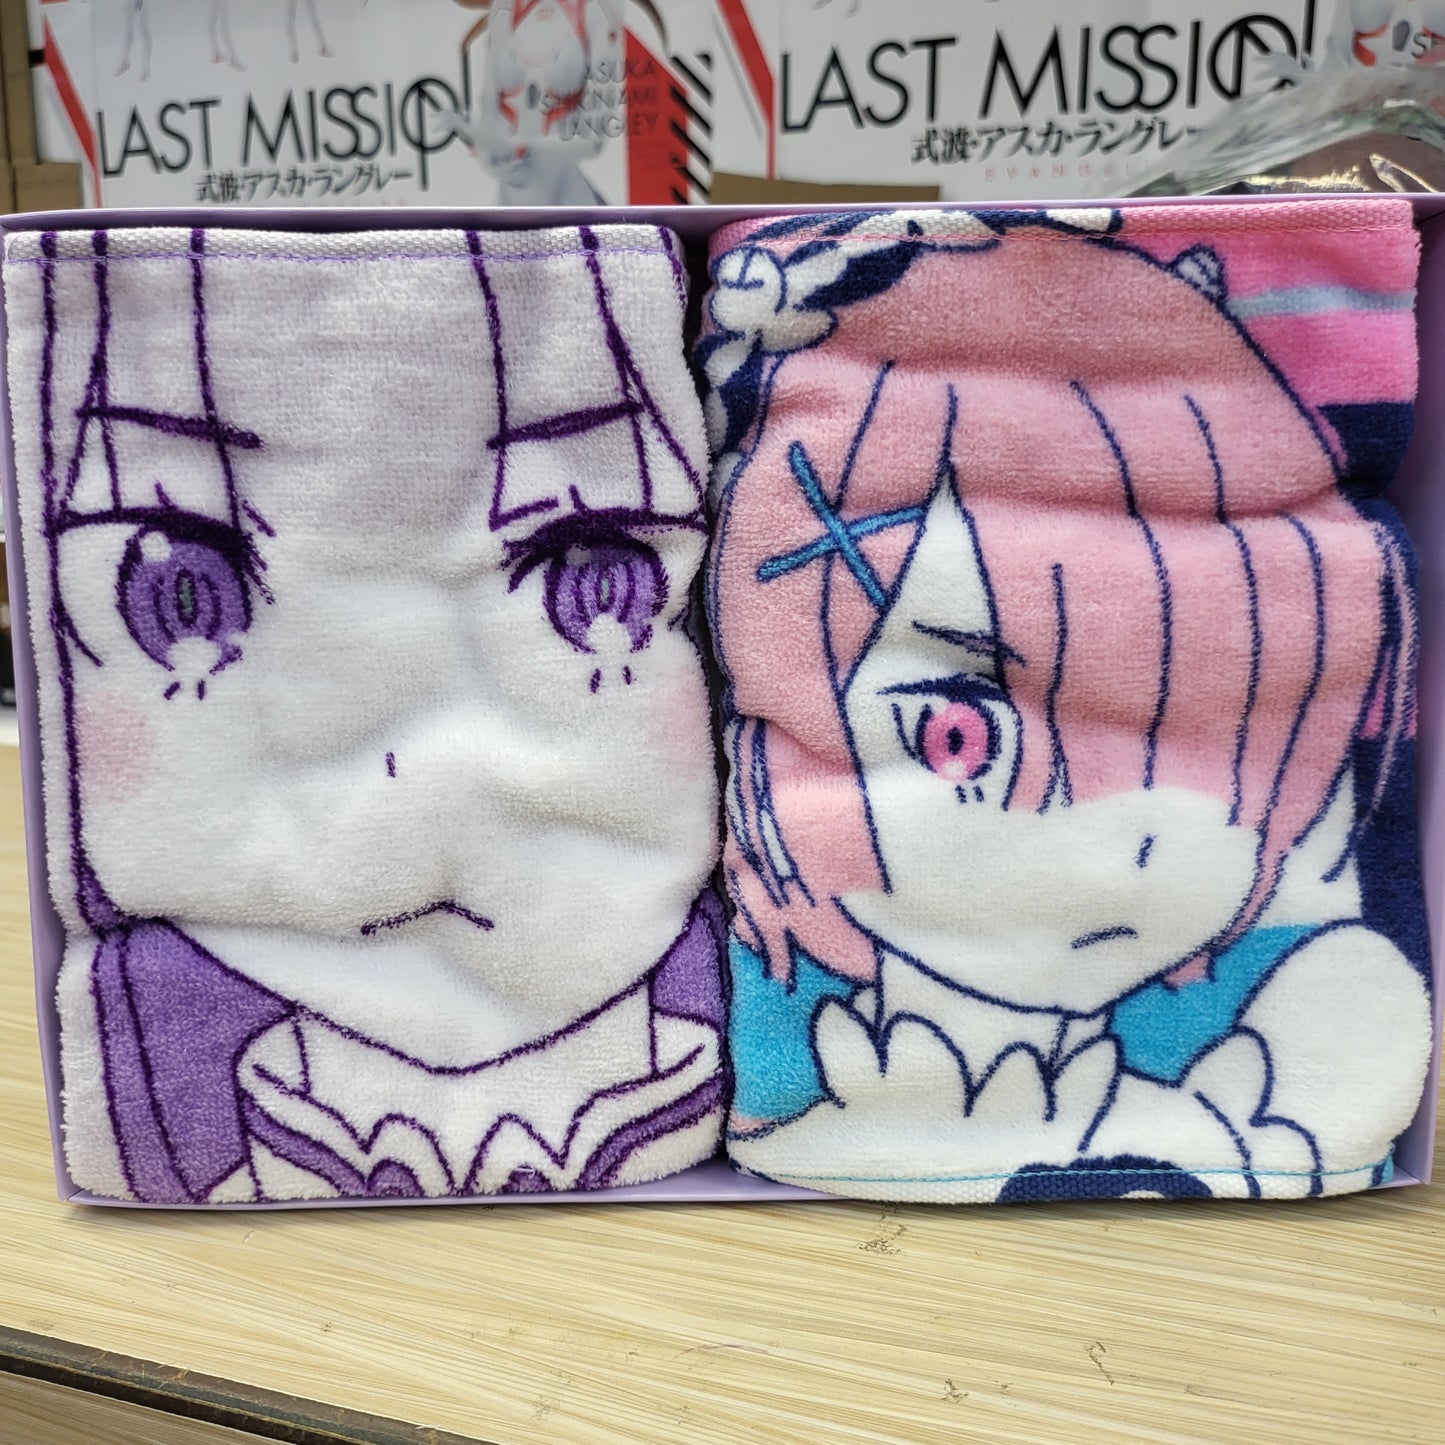 Re:Zero Emilia Rem and Ram Towel Set Vol. 2, 7.8" x 39.3"